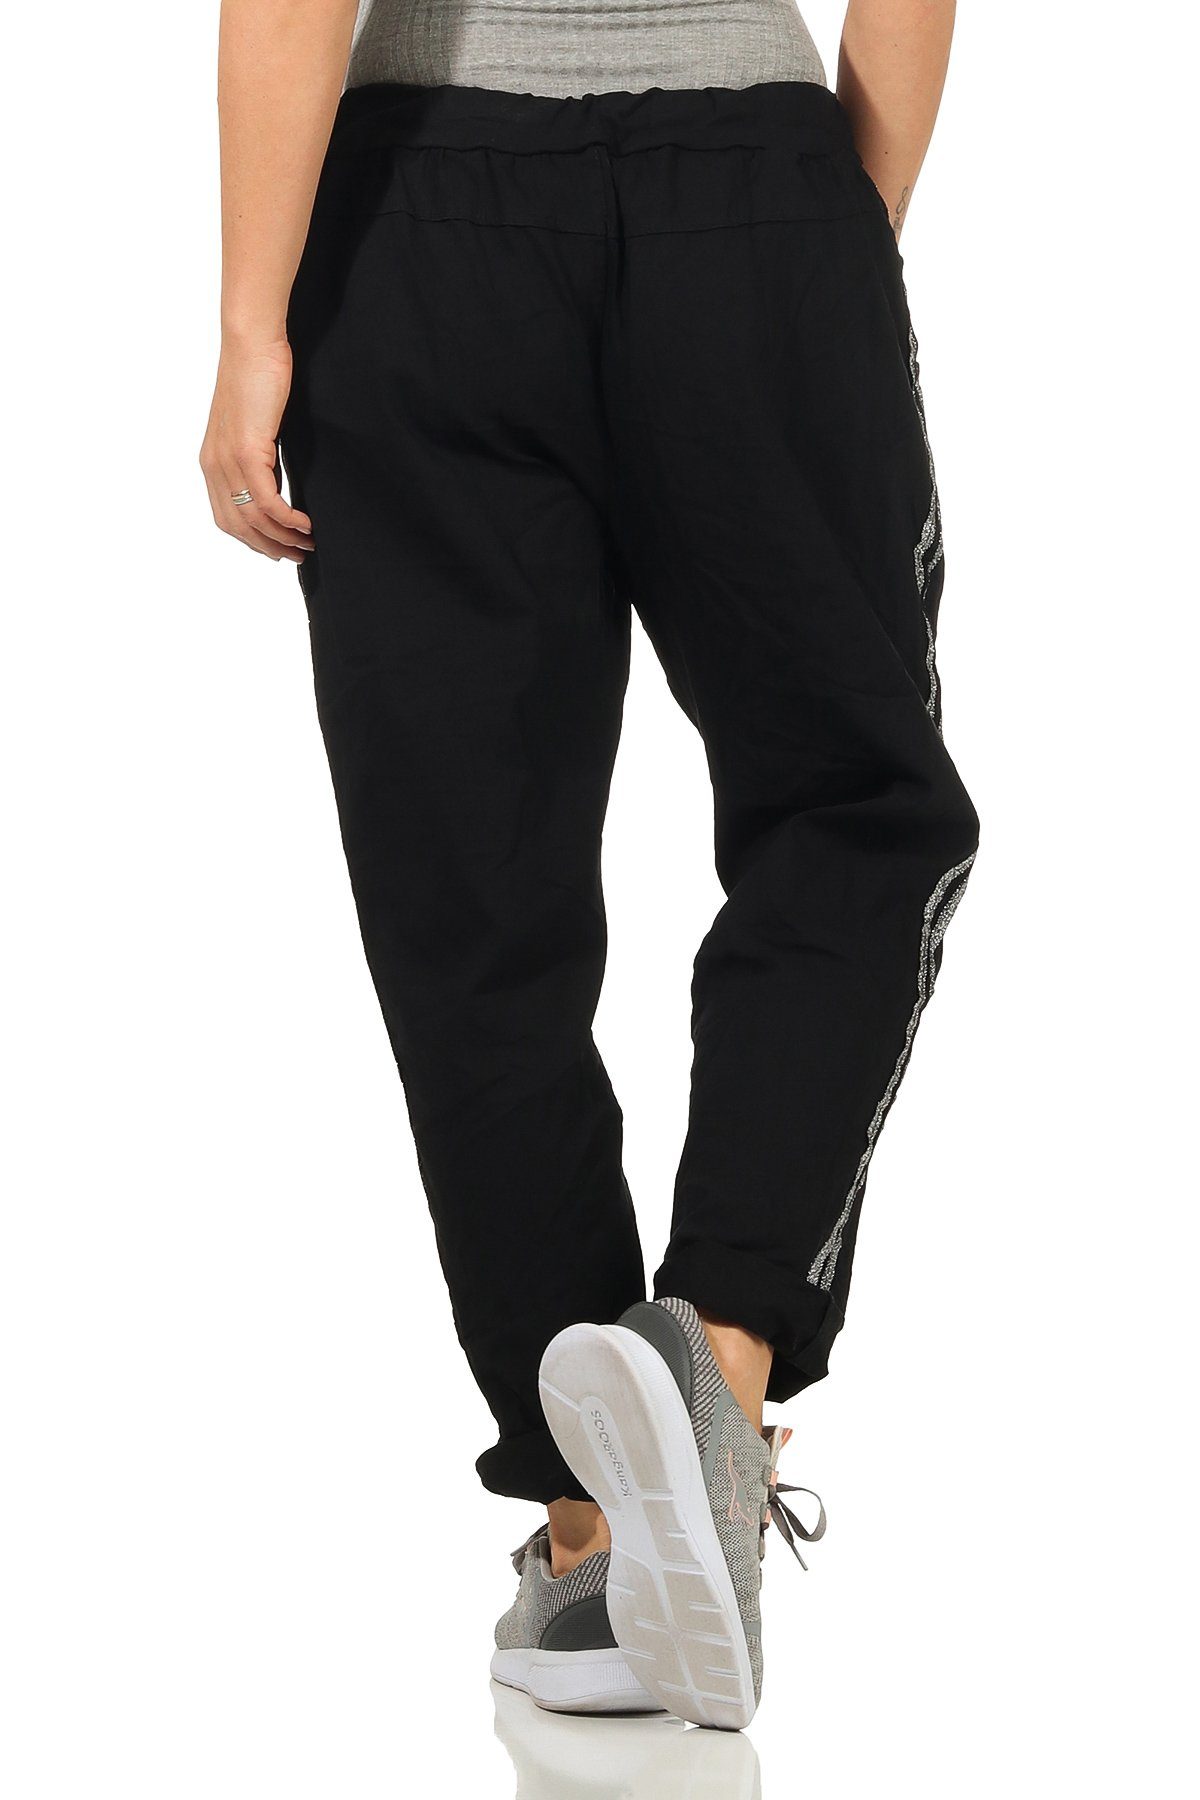 Mississhop Jogginghose Damen Baumwollhose mit Silberstreifen M.348 Schwarz Seitlichen Hose